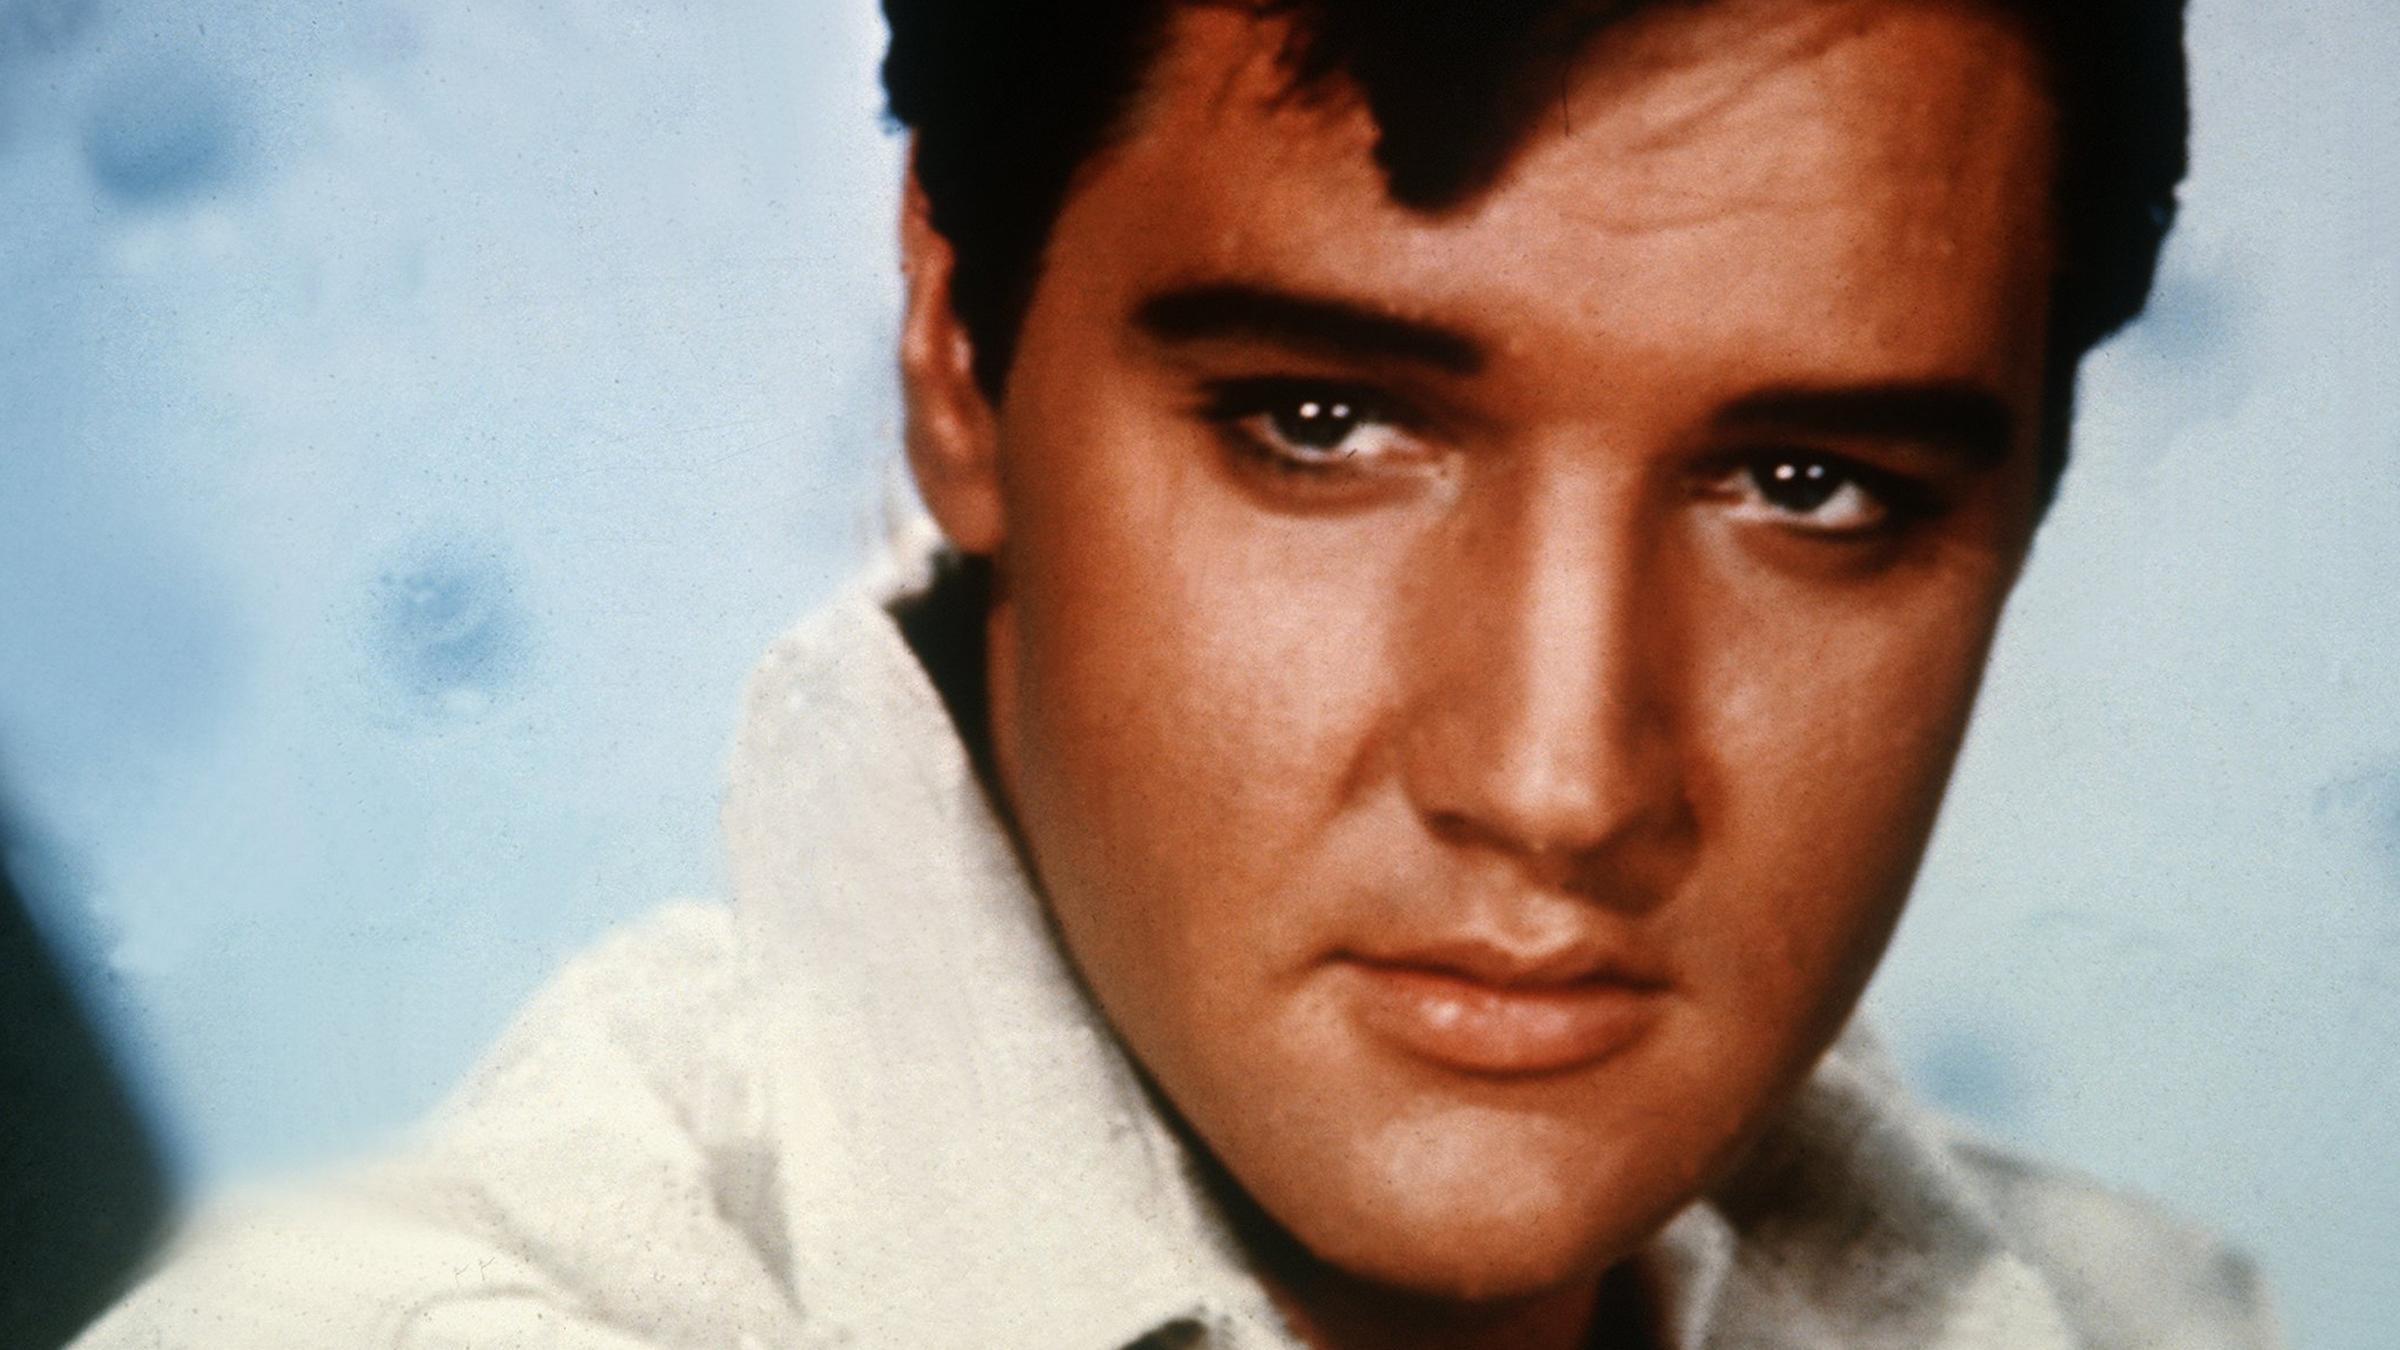 Am 8. Januar 1935 wird Elvis Presley in Tupelo, Mississippi geboren. Sein um Minuten älterer Zwillingsbruder stirbt noch während der Geburt. 